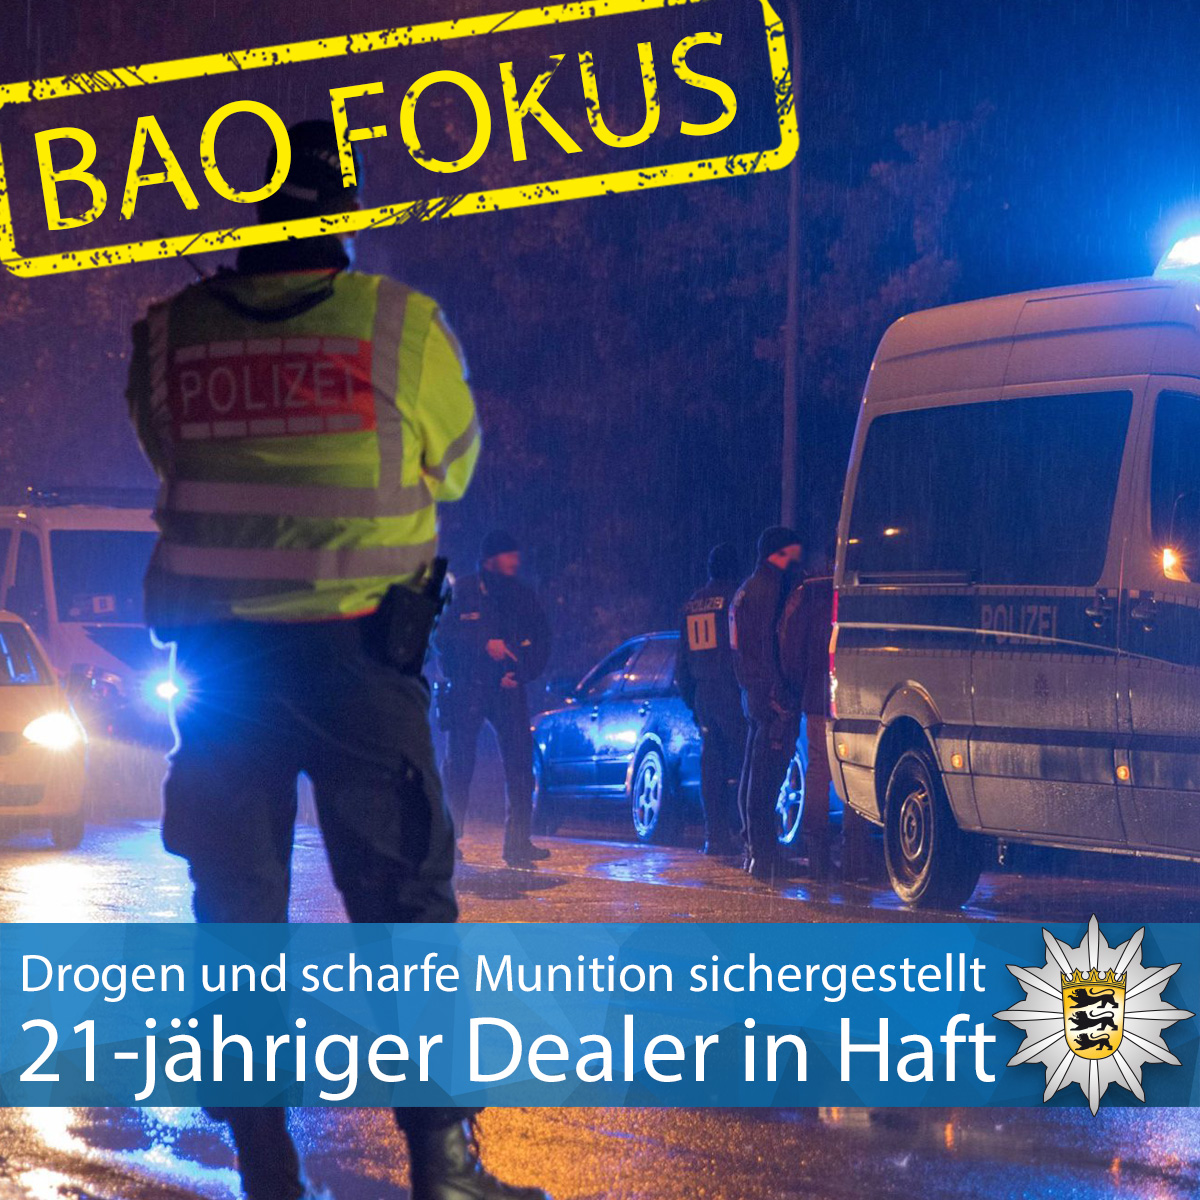 #BAOFOKUS ⚠️ Unsere Kollegen haben am Dienstag einen 21-Jährigen festgenommen, der bewaffnet mit Drogen gehandelt haben soll. Auch er steht mit Zusammenhang mit den rivalisierenden Gruppen im Großraum Stuttgart. Zur PM ▶️ t1p.de/pzlsd Euer #LKABW #BereitfürSicherheit